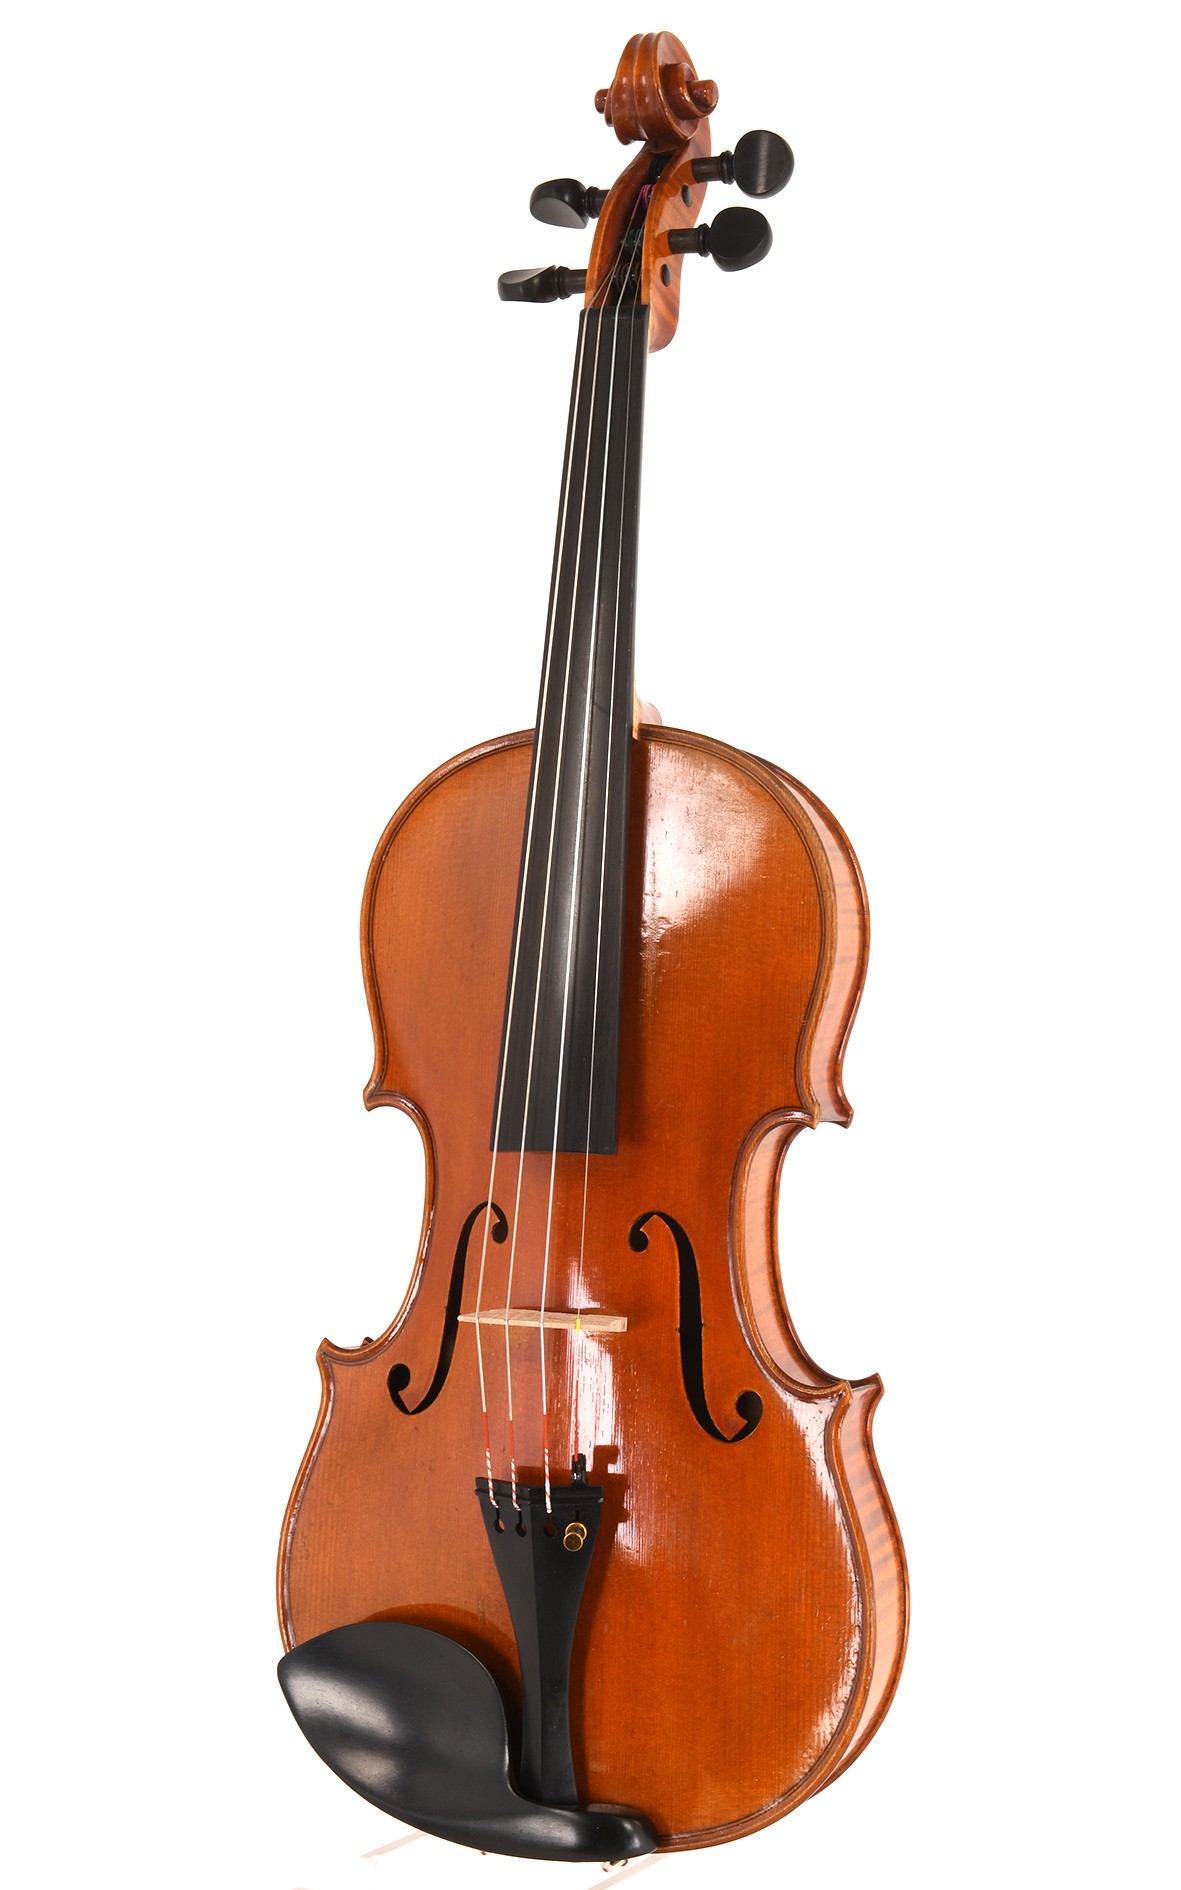 Markneukirchener Geige meisterlich-handwerklicher Tradition, gebaut um 1940